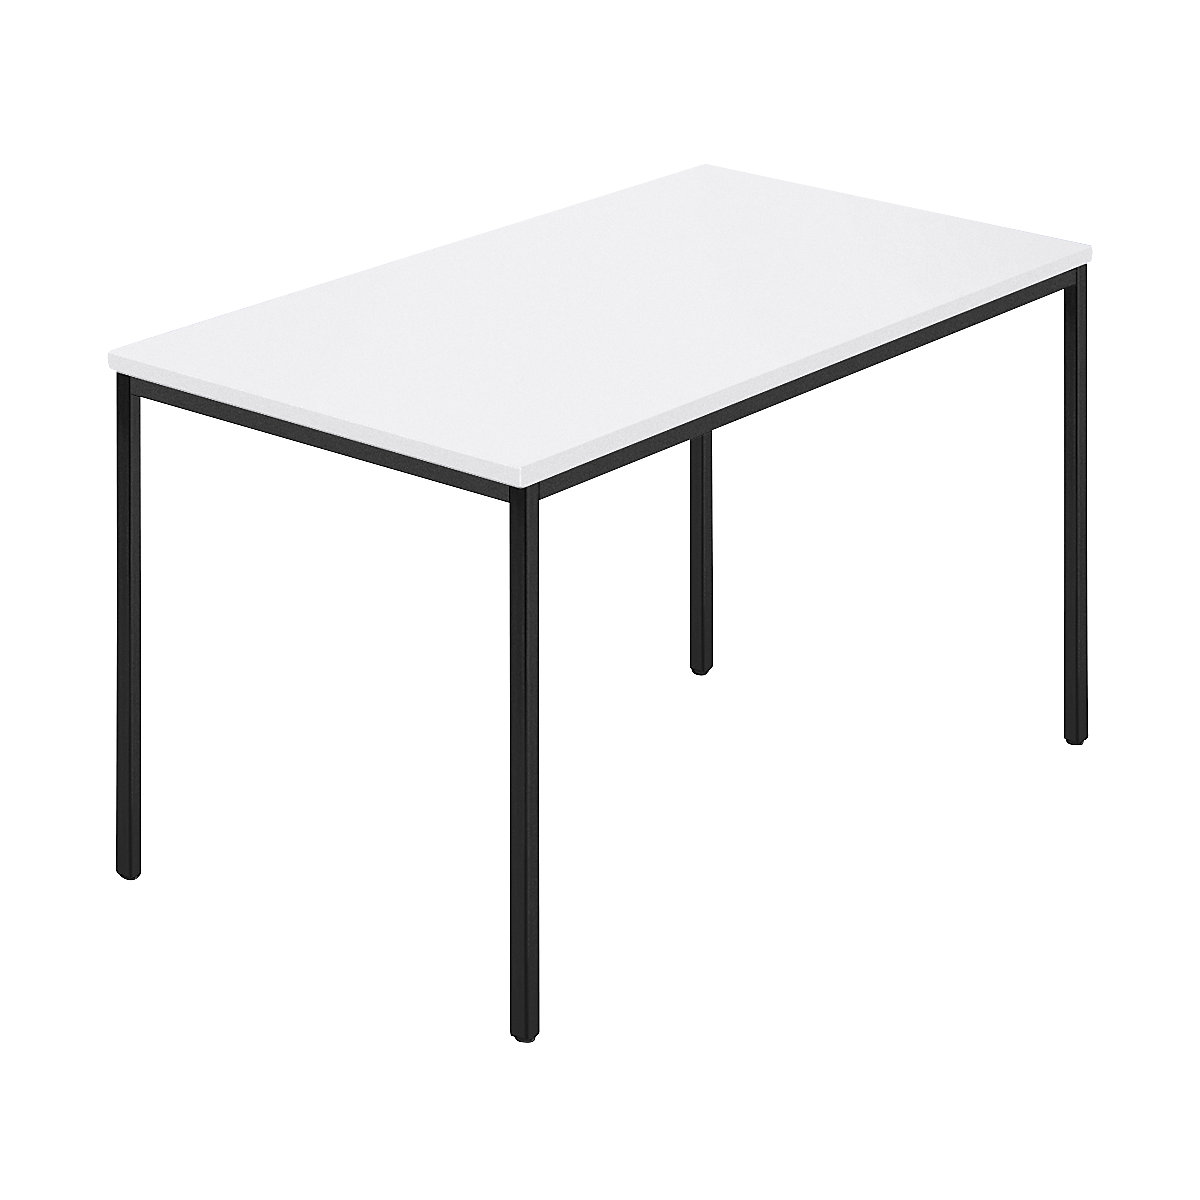 Pravokutni stol, presvučena četverokutna cijev, ŠxD 1200 x 800 mm, u bijeloj / antracit boji-5